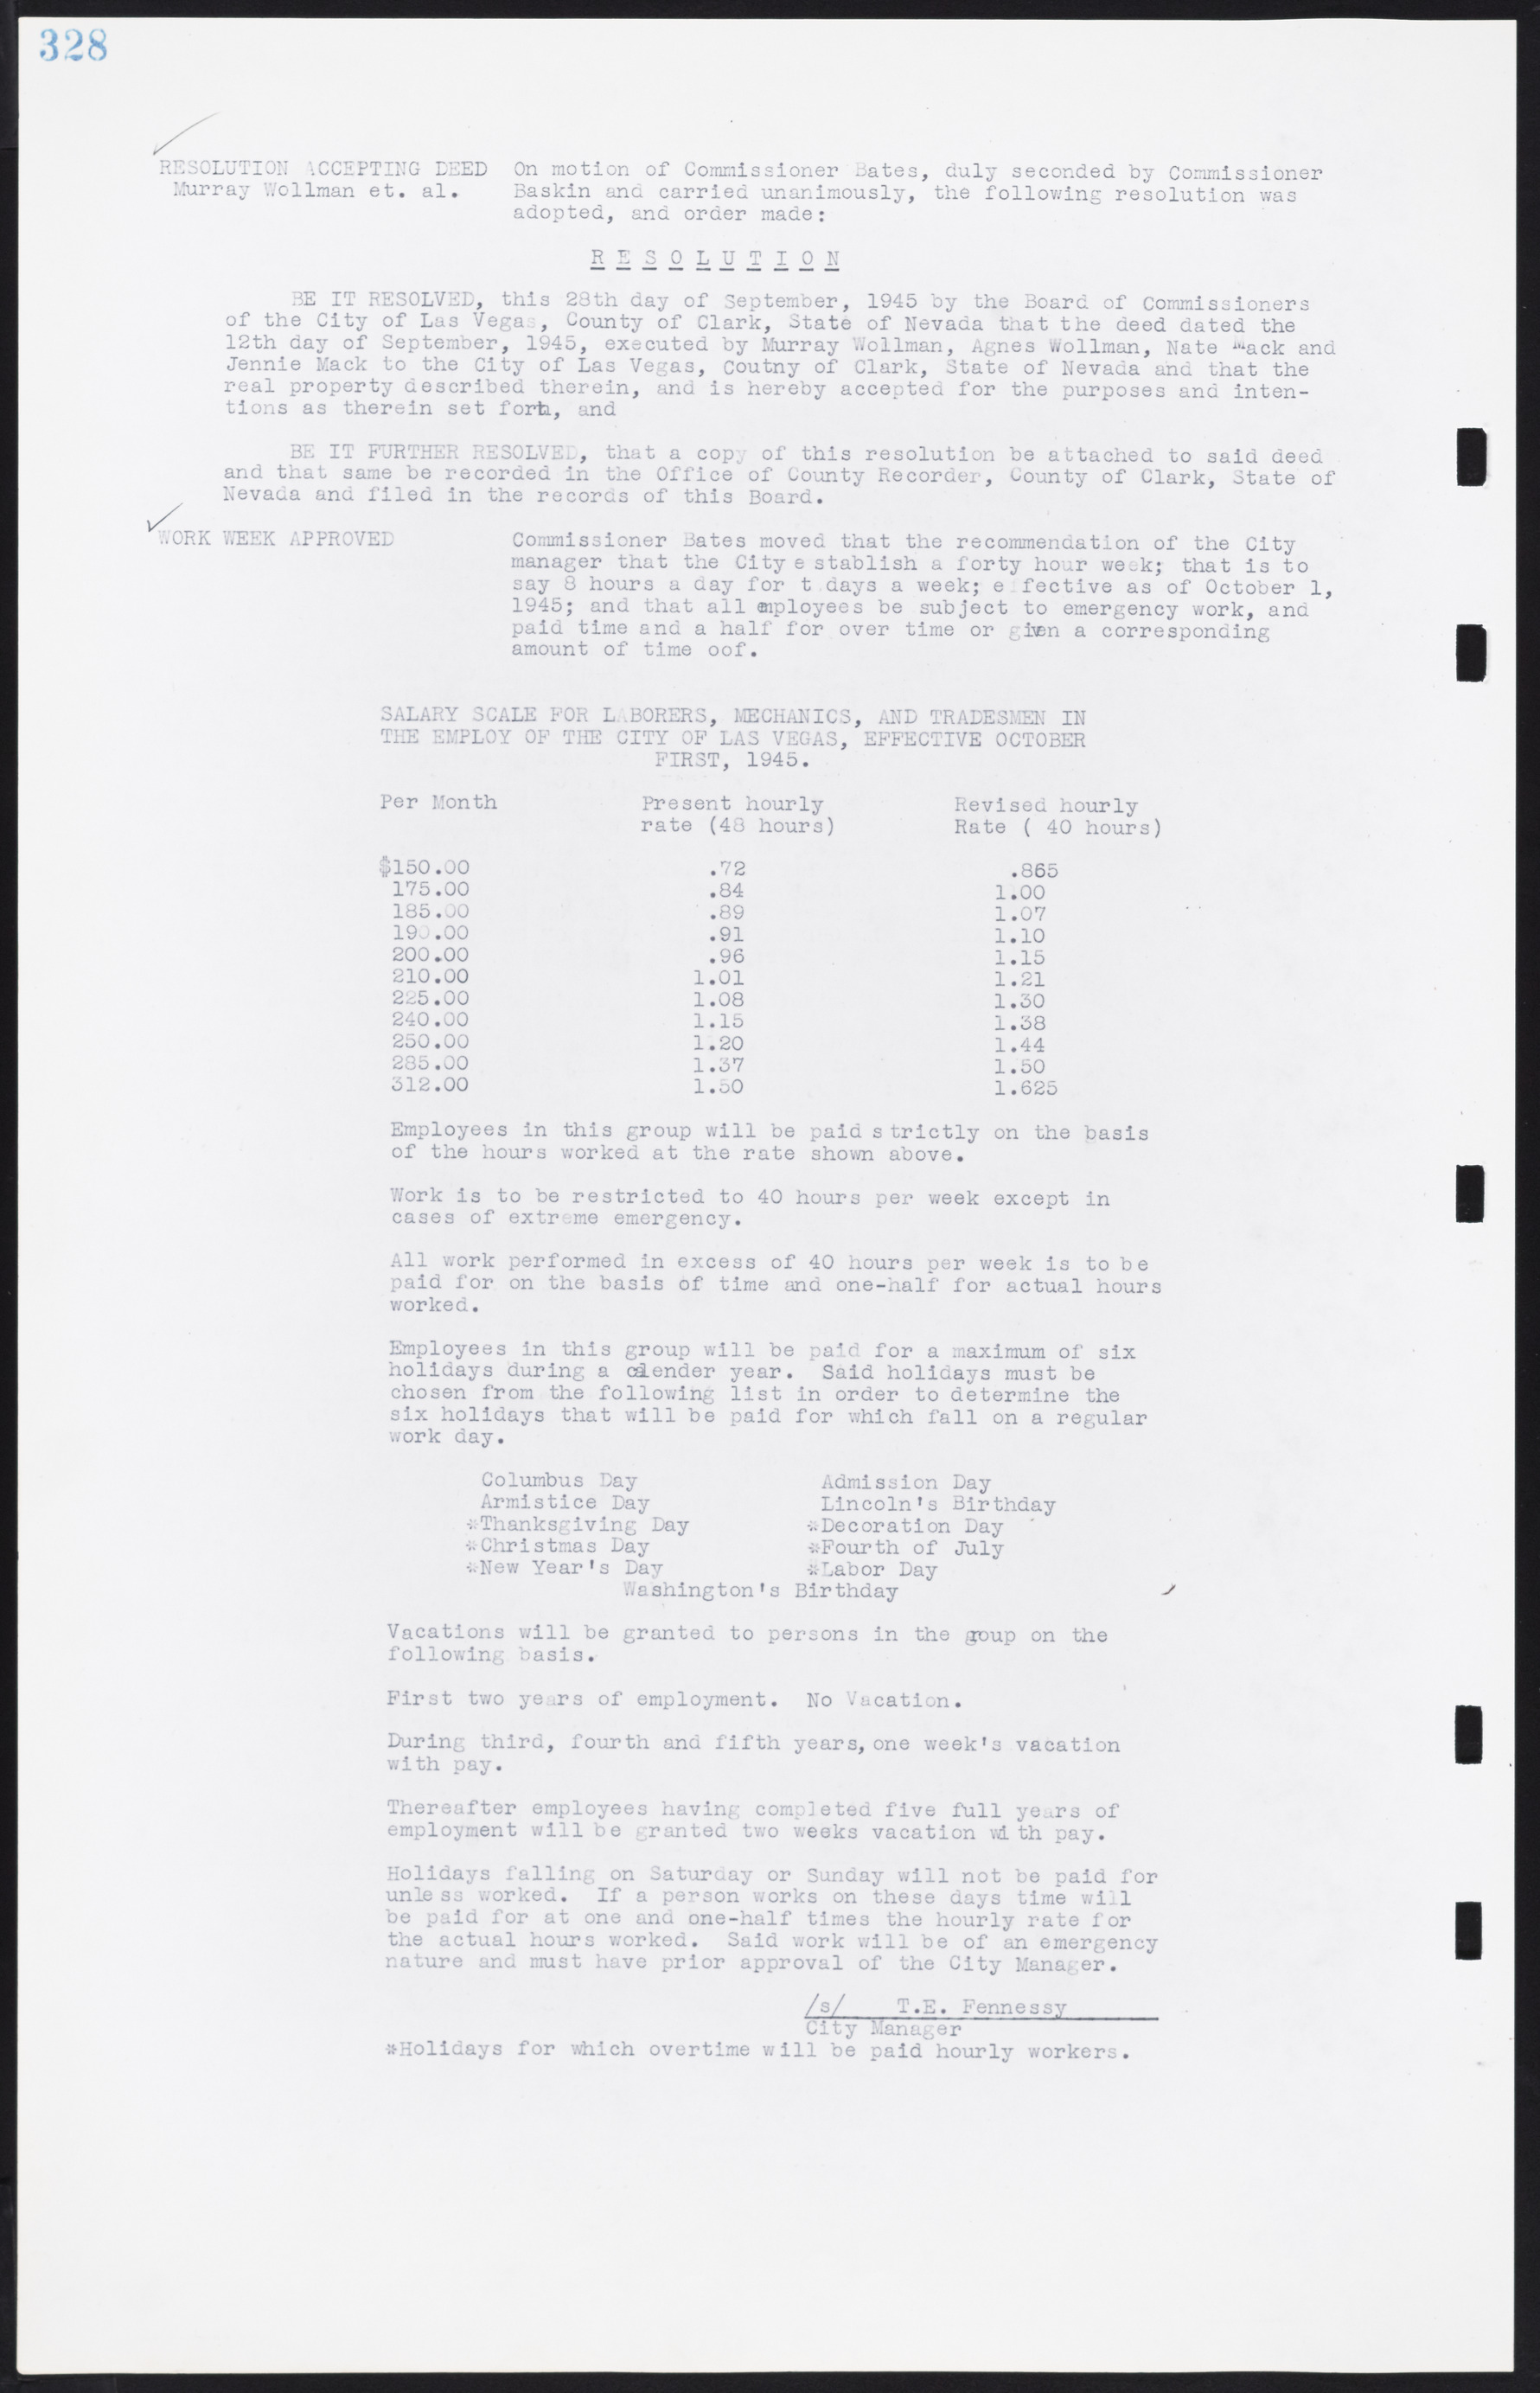 Las Vegas City Commission Minutes, August 11, 1942 to December 30, 1946, lvc000005-352